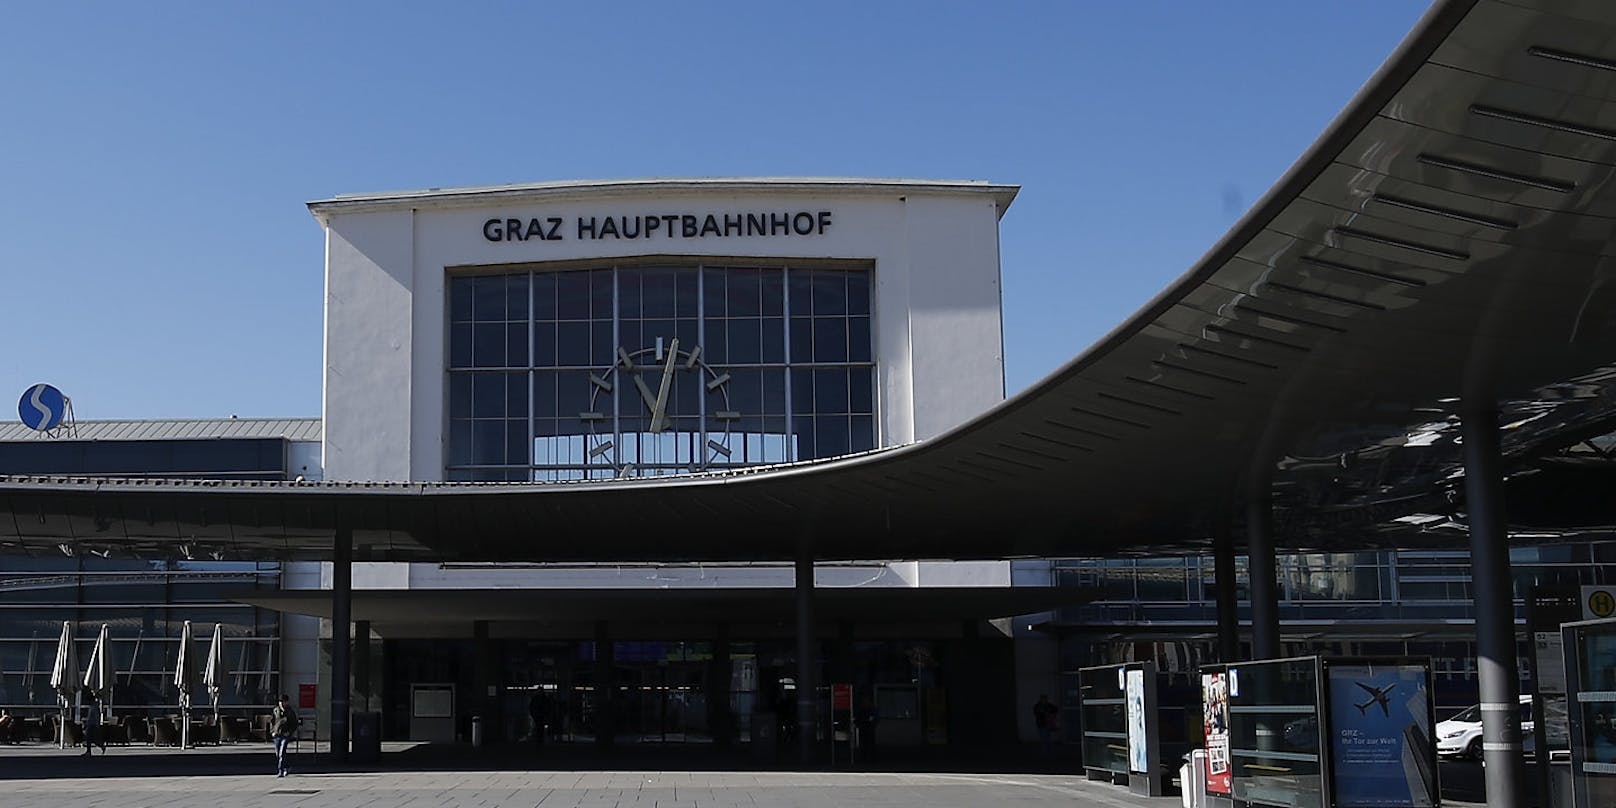 Am Grazer Hauptbahnhof kam es am Montagabend (04.08.2020) zu einer sexuellen Belästigung und gefährlichen Drohung. 